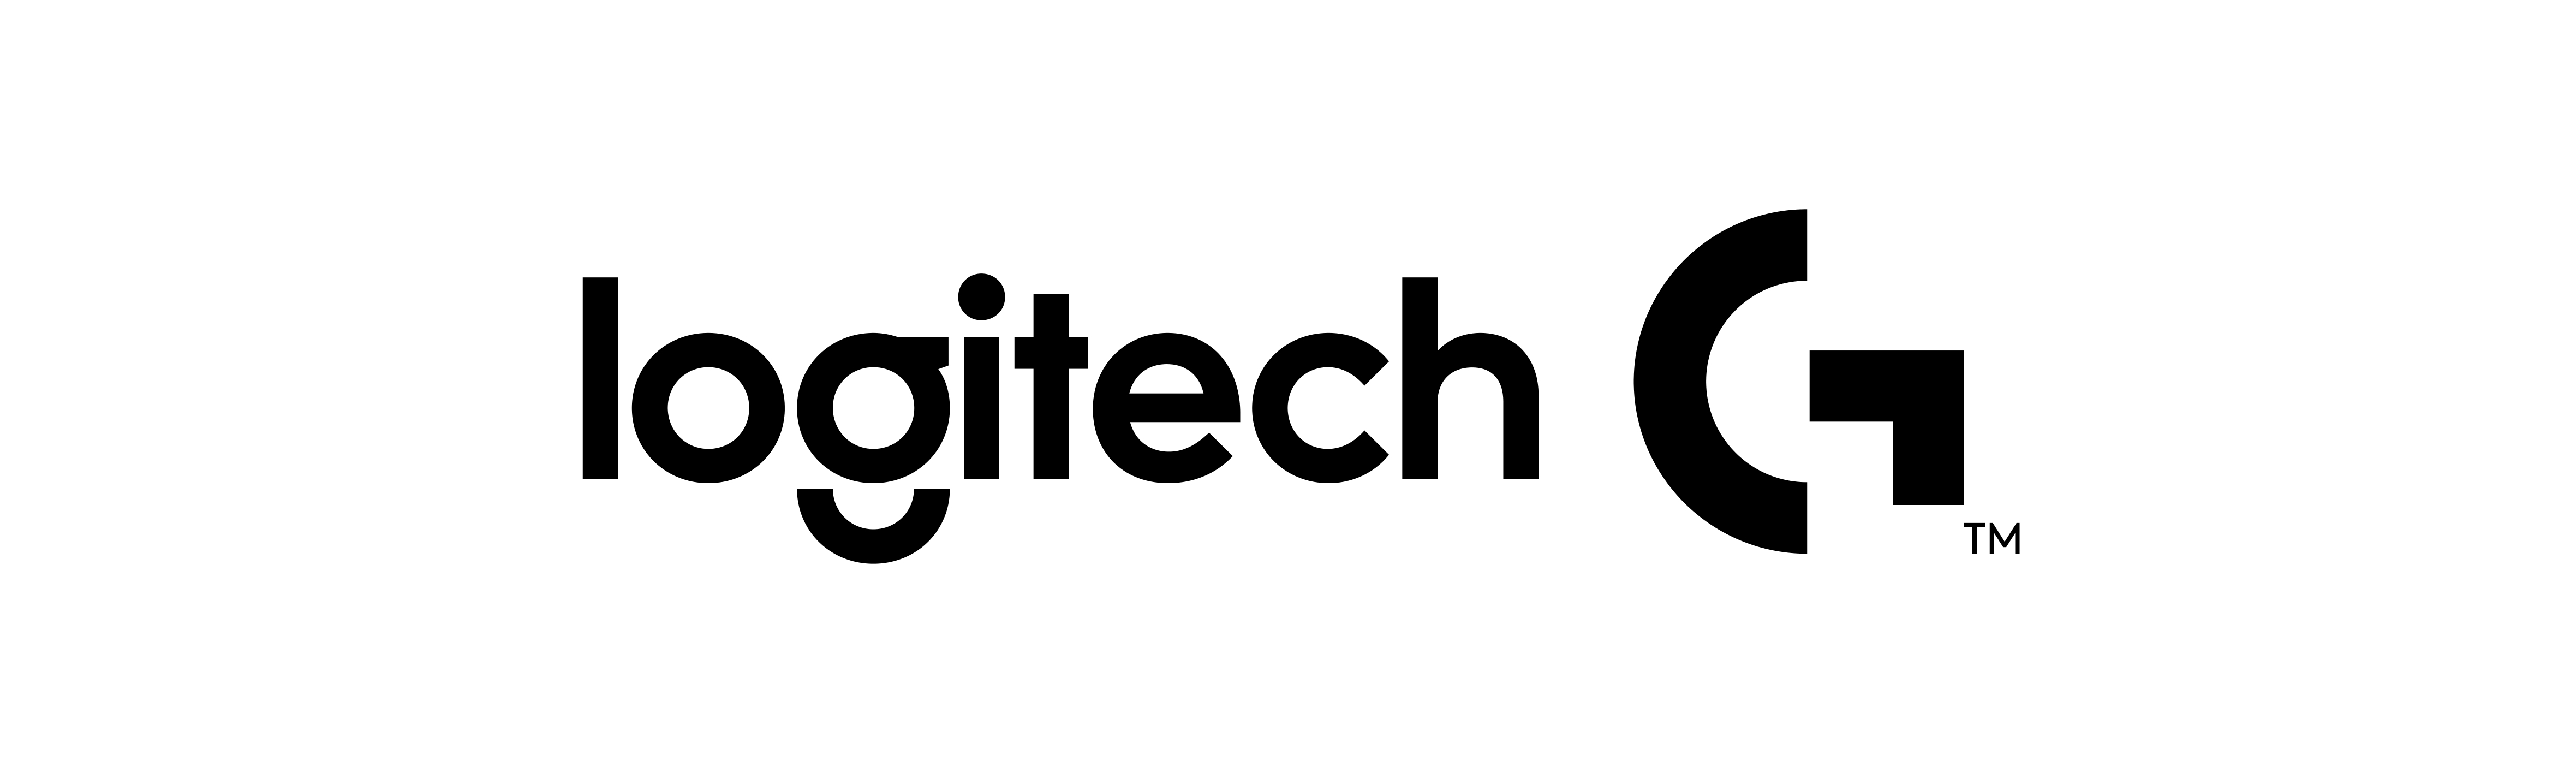 Logitech-G Logitech Extreme 3D Pro